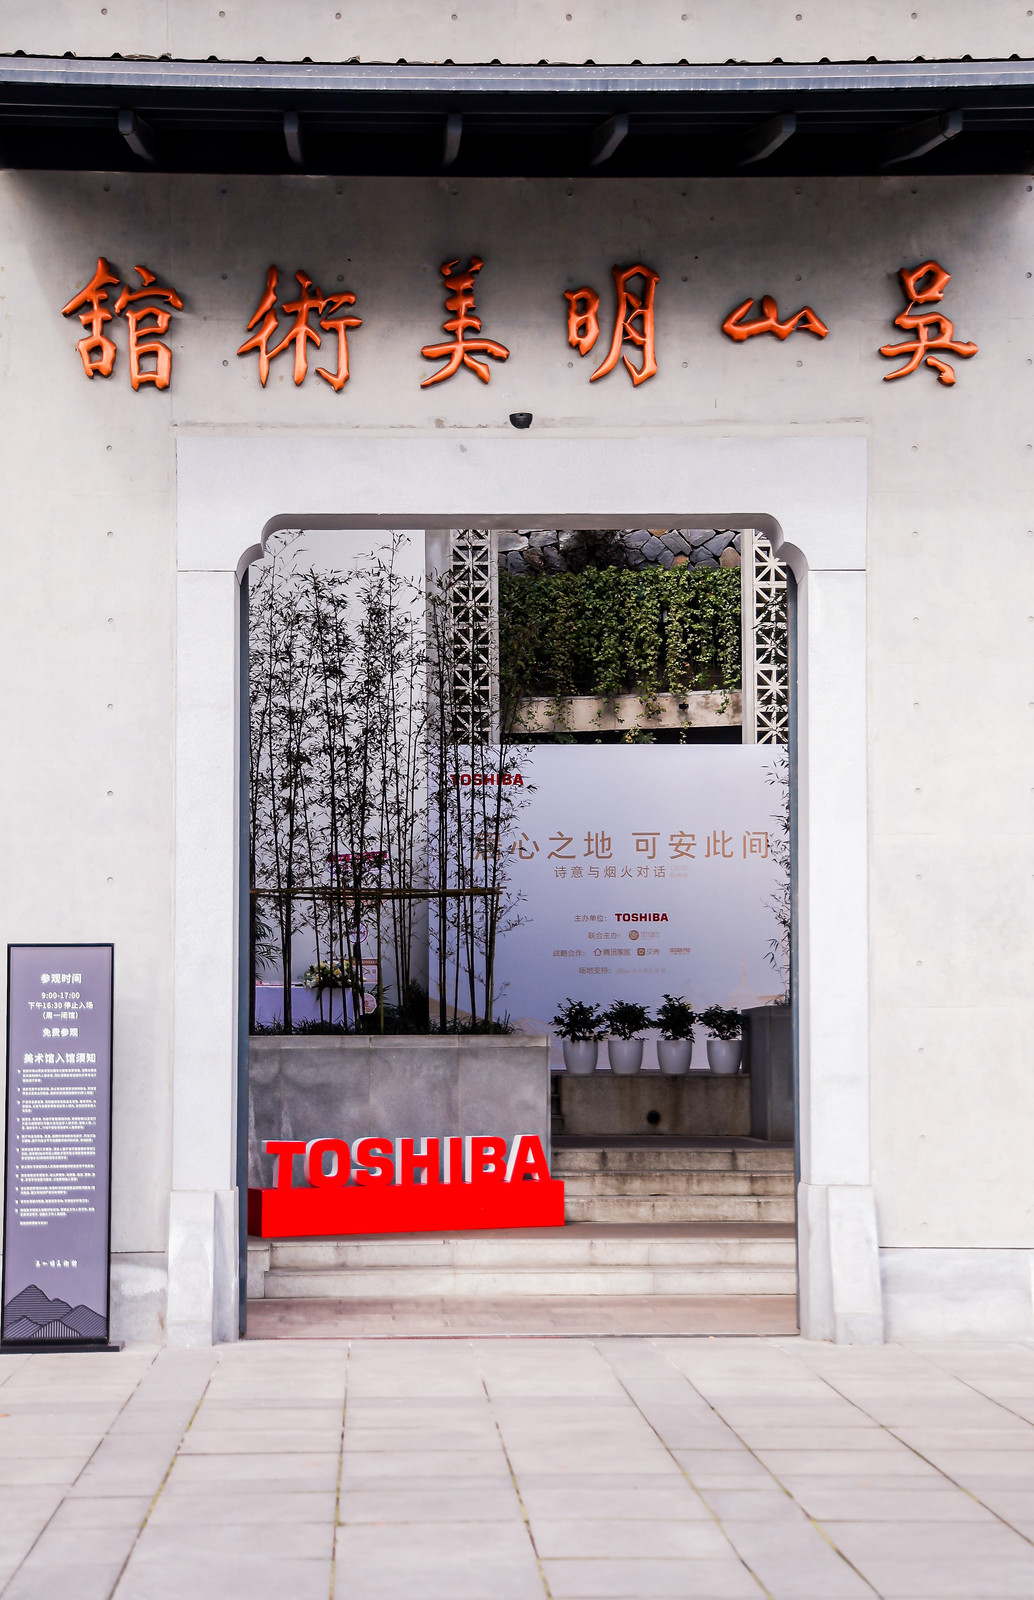 炊火与诗意的对话 东芝设想师美学巡回沙龙·杭州站出色回忆